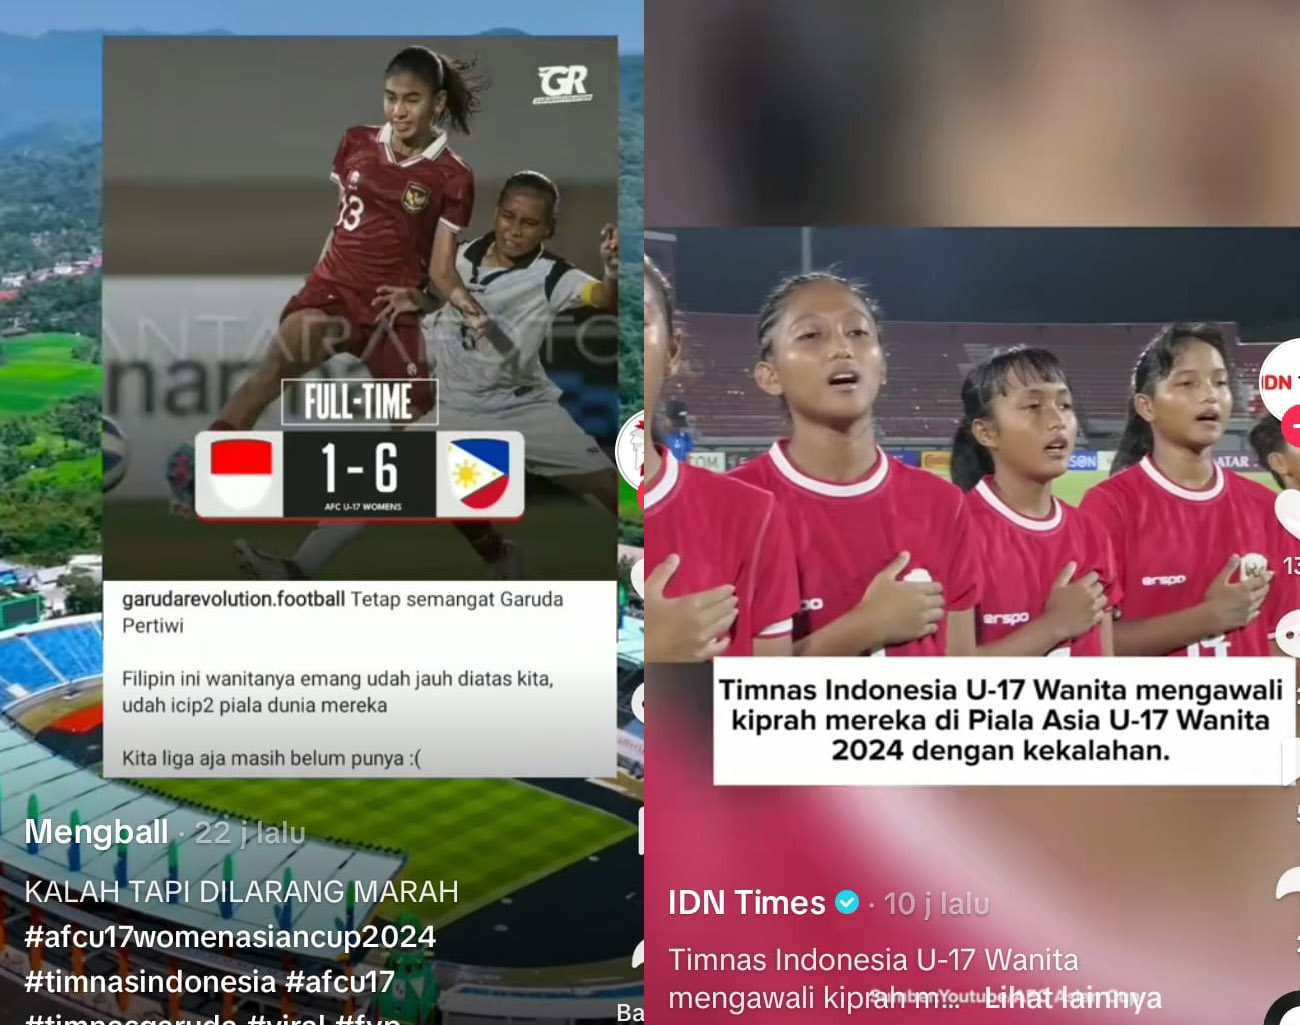 Inilah Statistik Hasil Pertandingan Timnas Wanita U-17 Indonesia vs Filipina Piala Asia Wanita U-17 2024